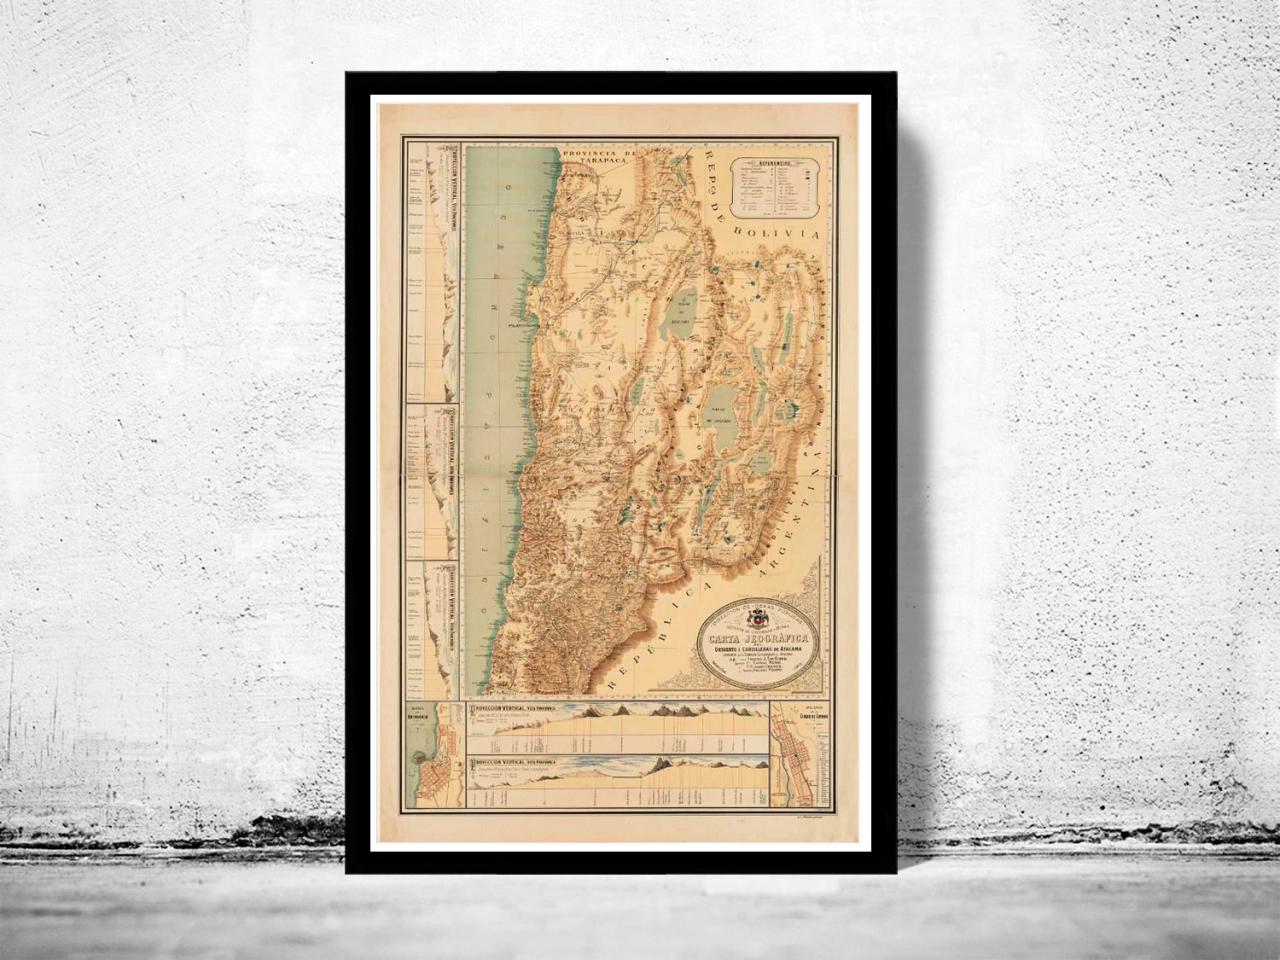 Old Map Of Chile Atacama Cordilleras Antofagasta 1892